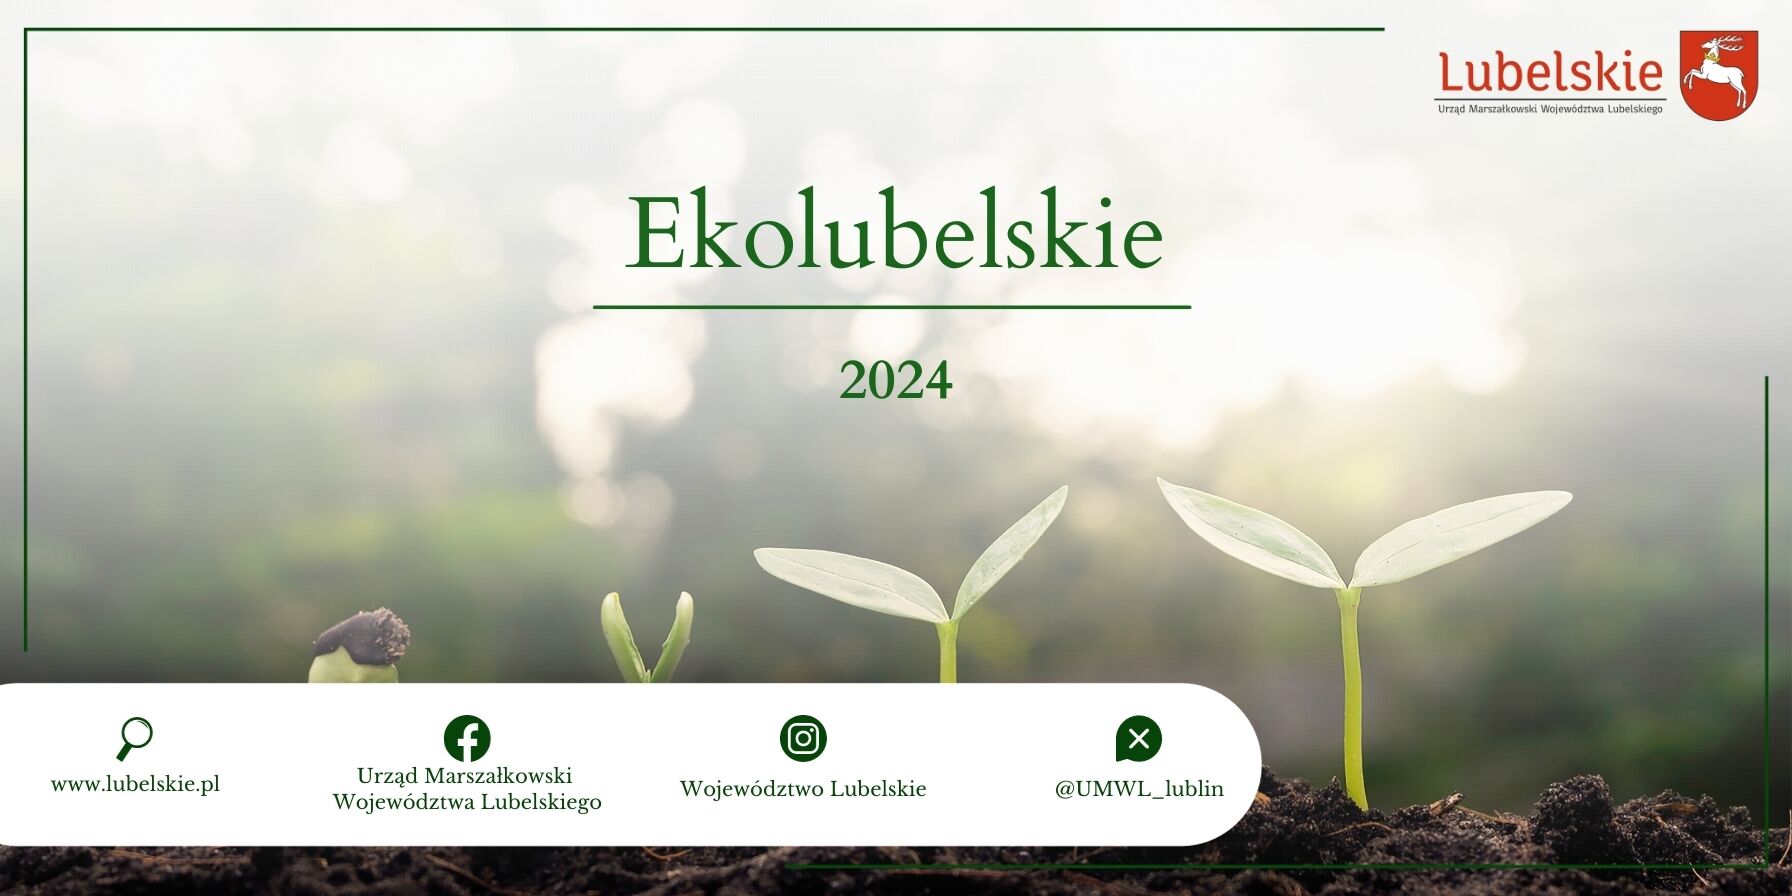 Baner promocyjny "Ekolubelskie 2024" z symbolami trzech rosnących roślin i logotypami organizacji na tle rozmytego zielonego lasu.